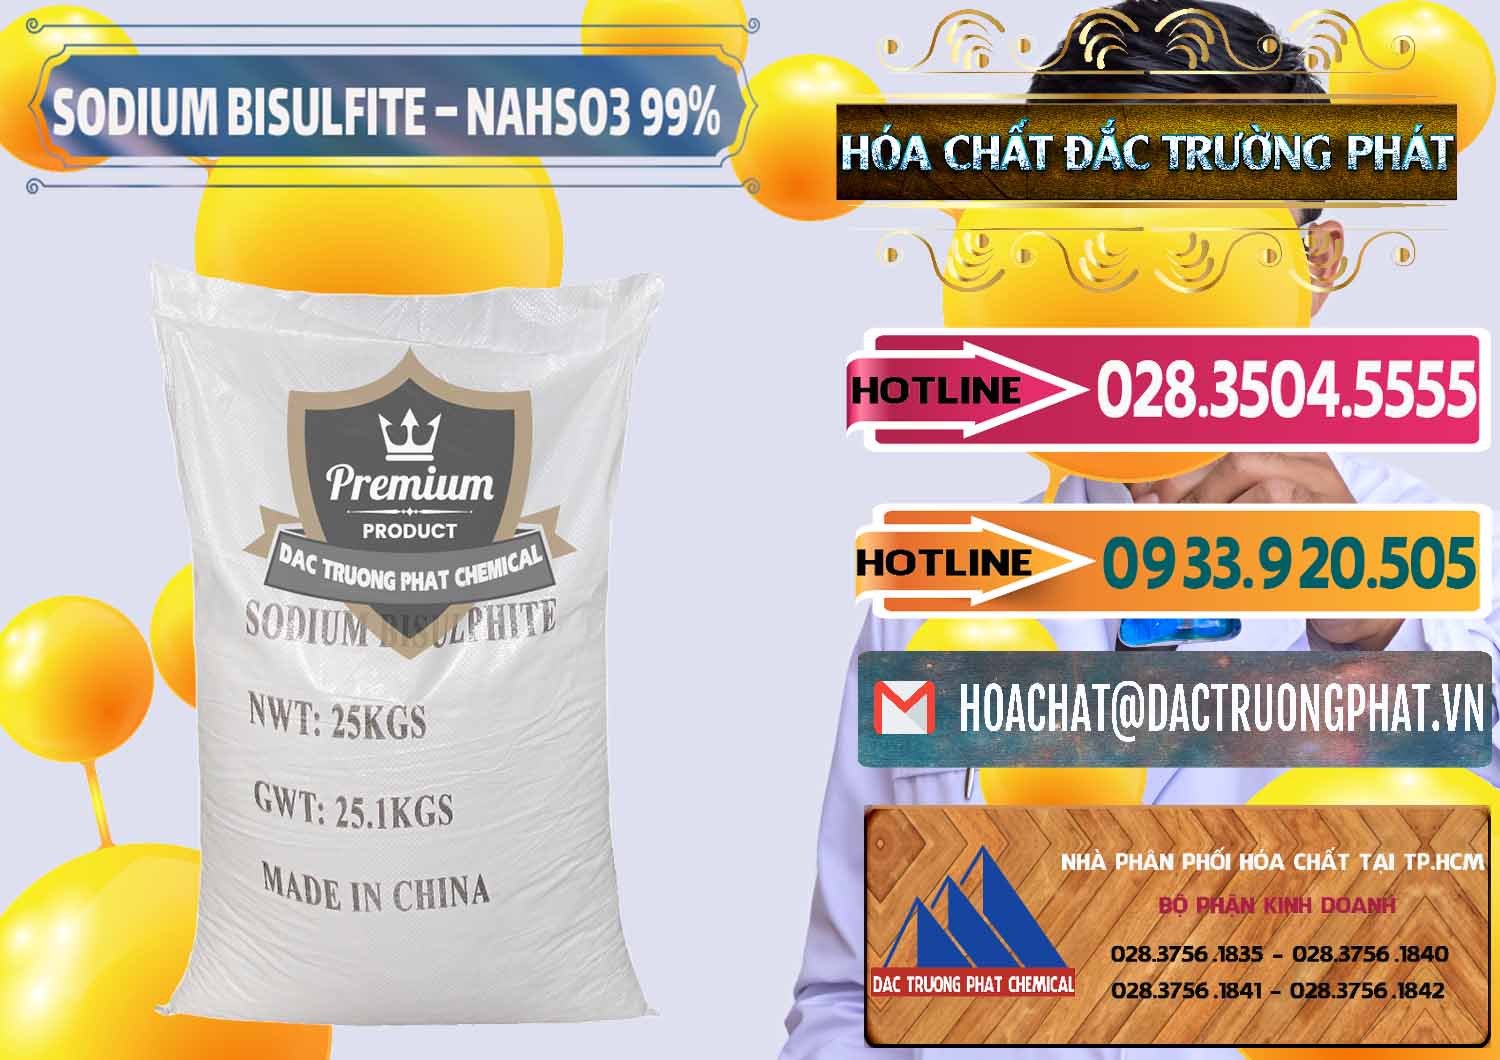 Công ty chuyên bán và phân phối Sodium Bisulfite – NAHSO3 Trung Quốc China - 0140 - Chuyên kinh doanh - phân phối hóa chất tại TP.HCM - dactruongphat.vn